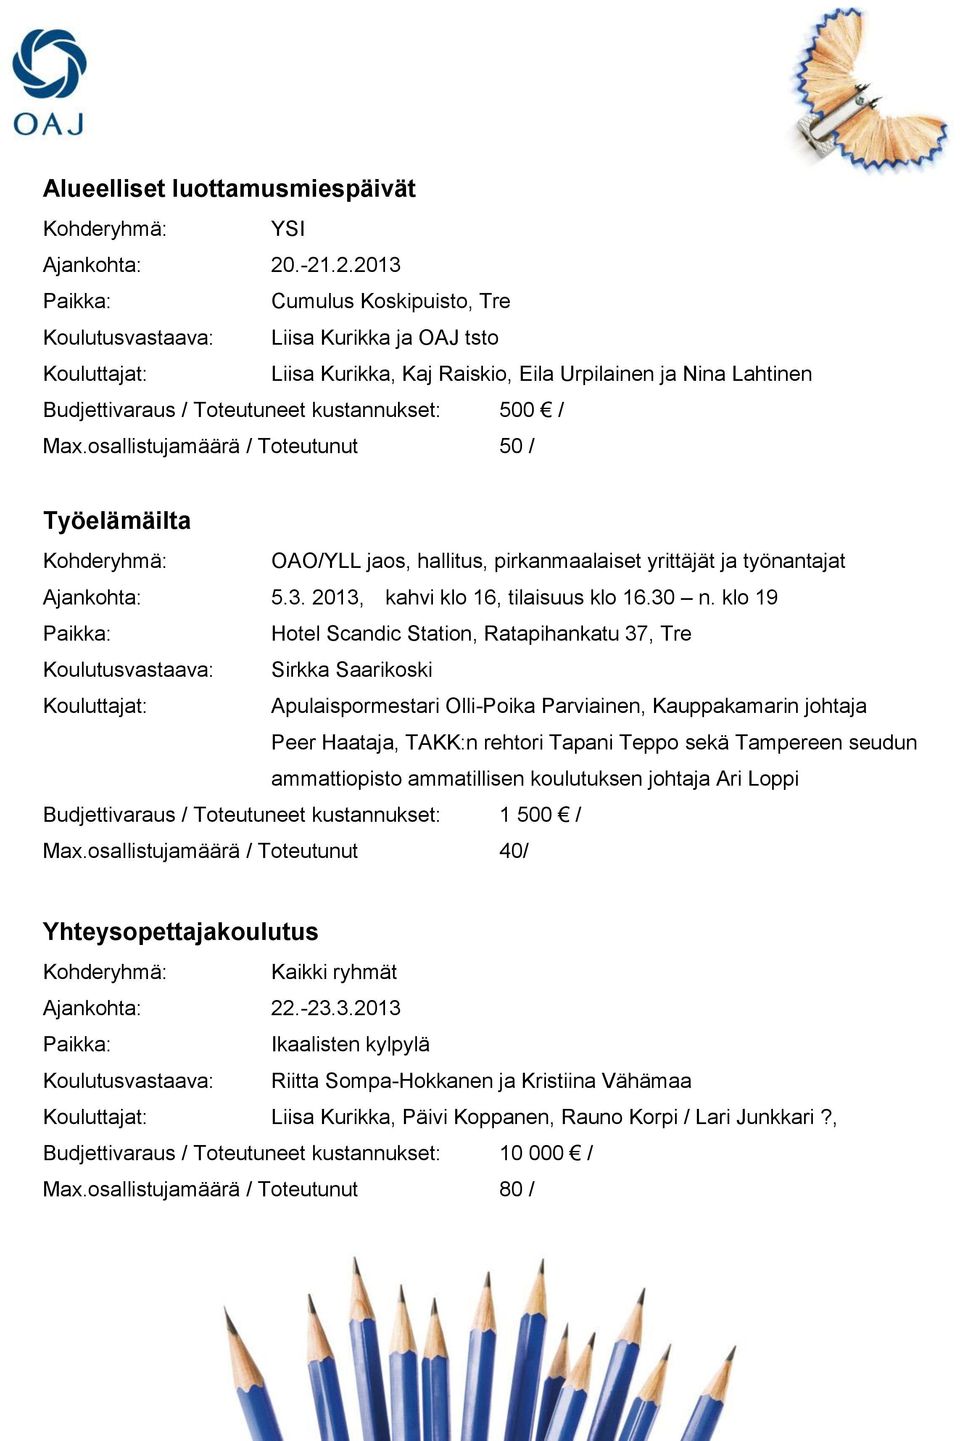 hallitus, pirkanmaalaiset yrittäjät ja työnantajat Ajankohta: 5.3. 2013, kahvi klo 16, tilaisuus klo 16.30 n.